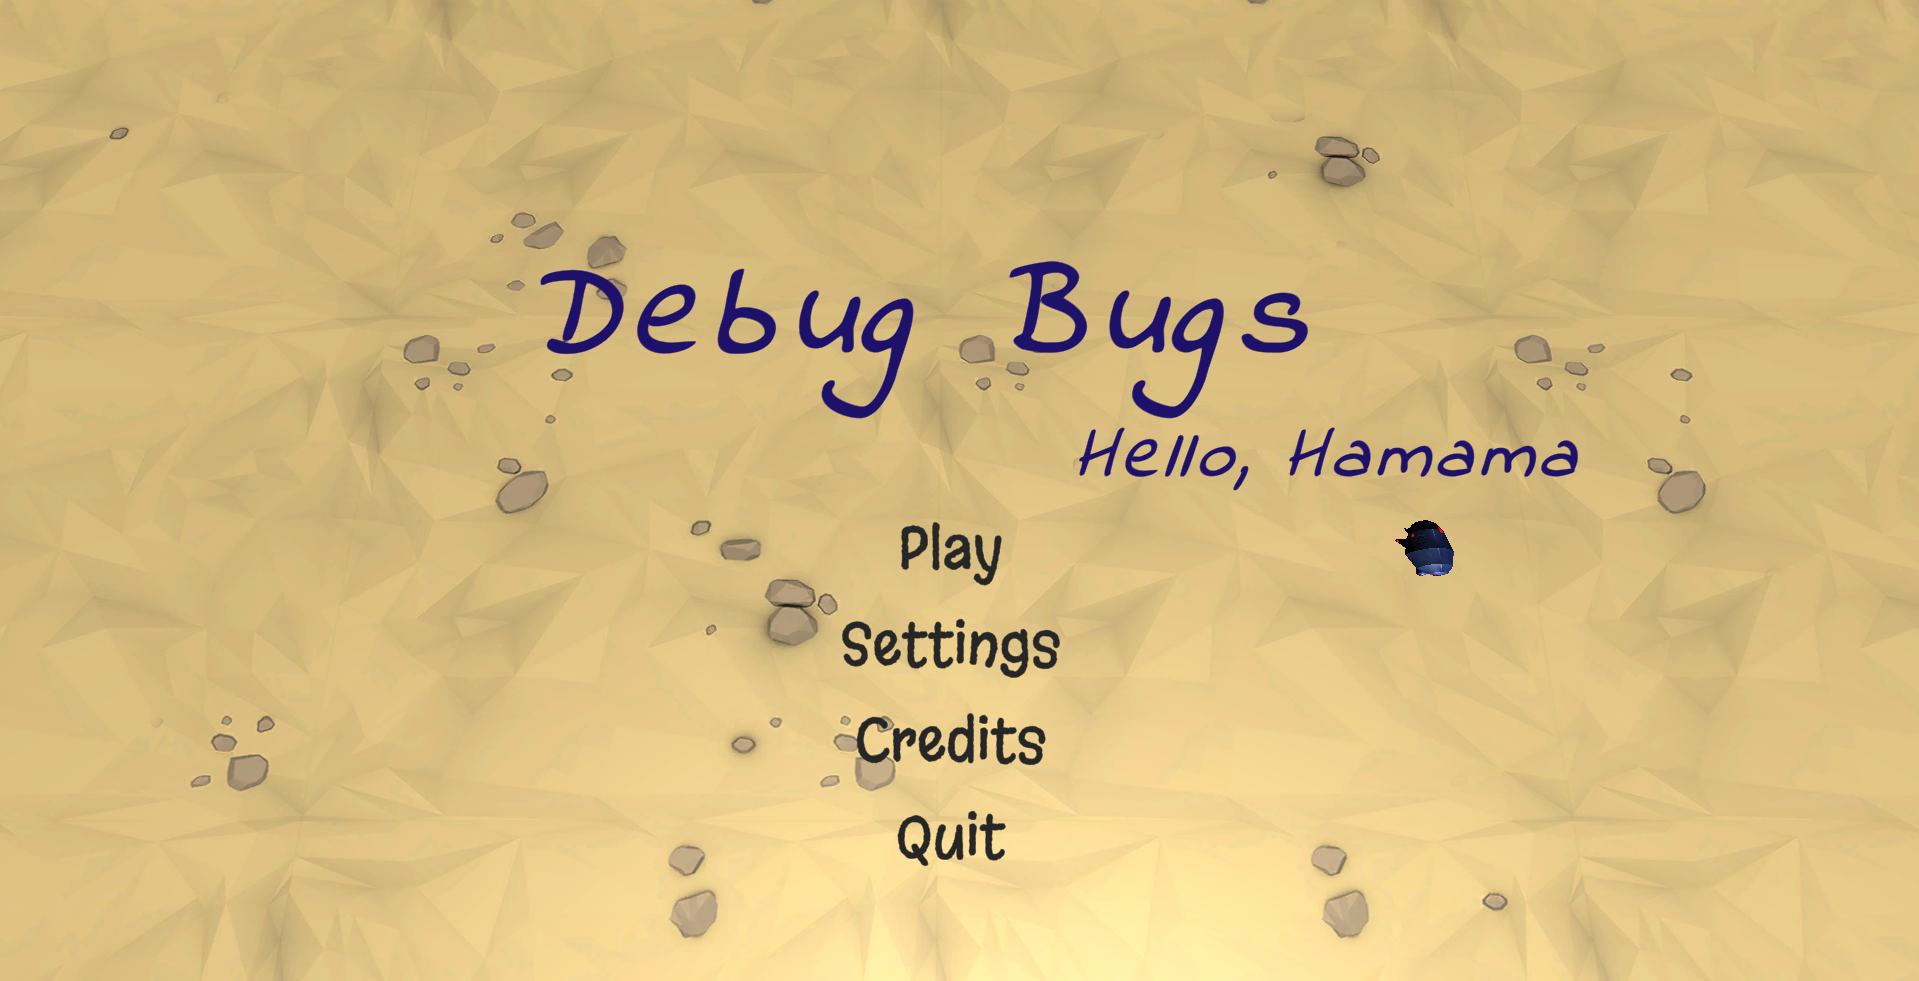 Debug Bugs v0.2